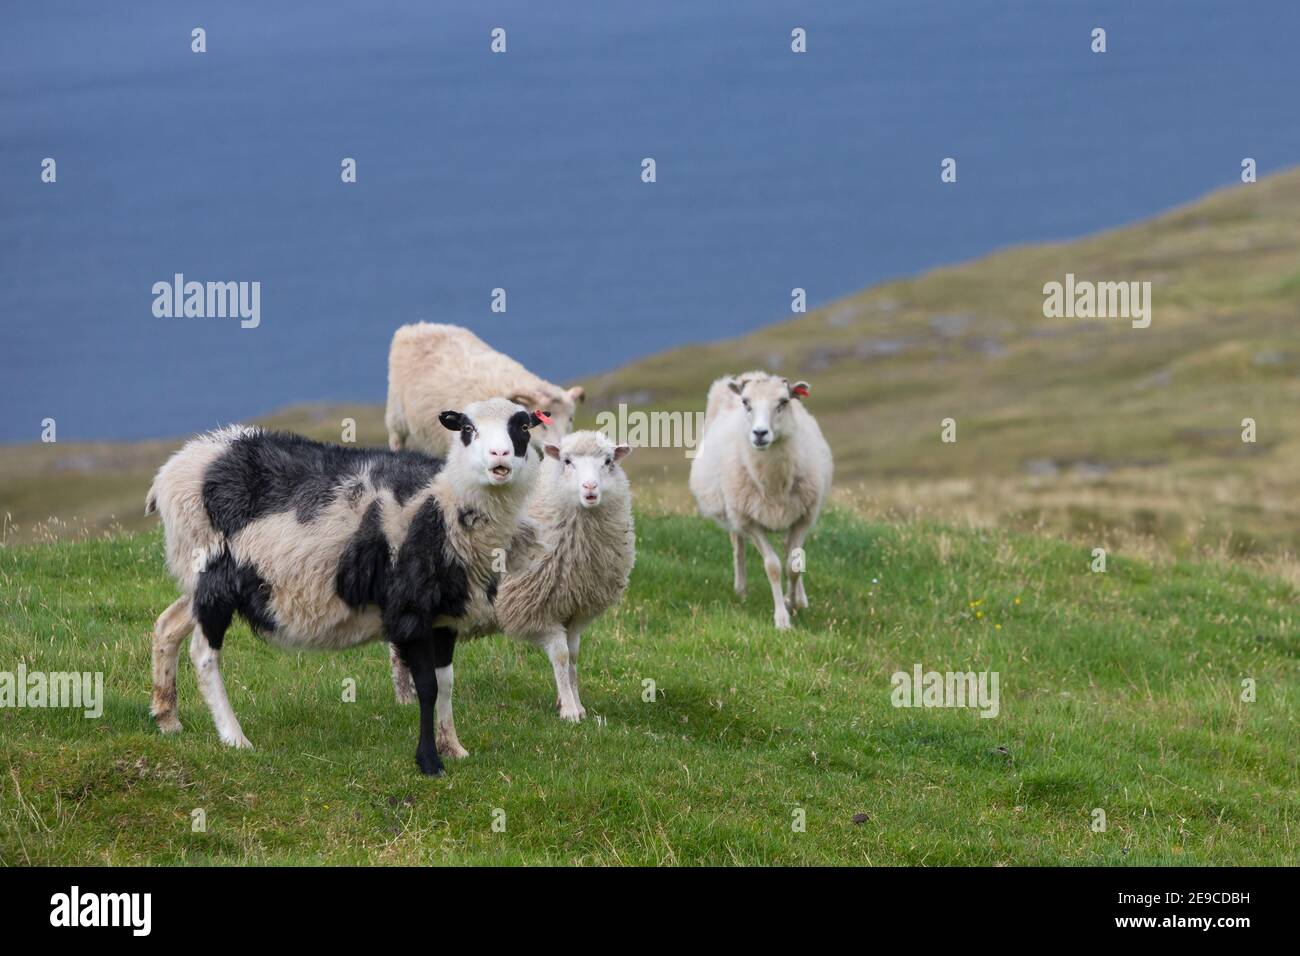 Färöer-Schaf, Färöer-Schafe, Schaf, Schafe, Färöer, Färöer-Inseln, Färöer Inseln, sheep, Faroe, Faeroe Islands Stock Photo